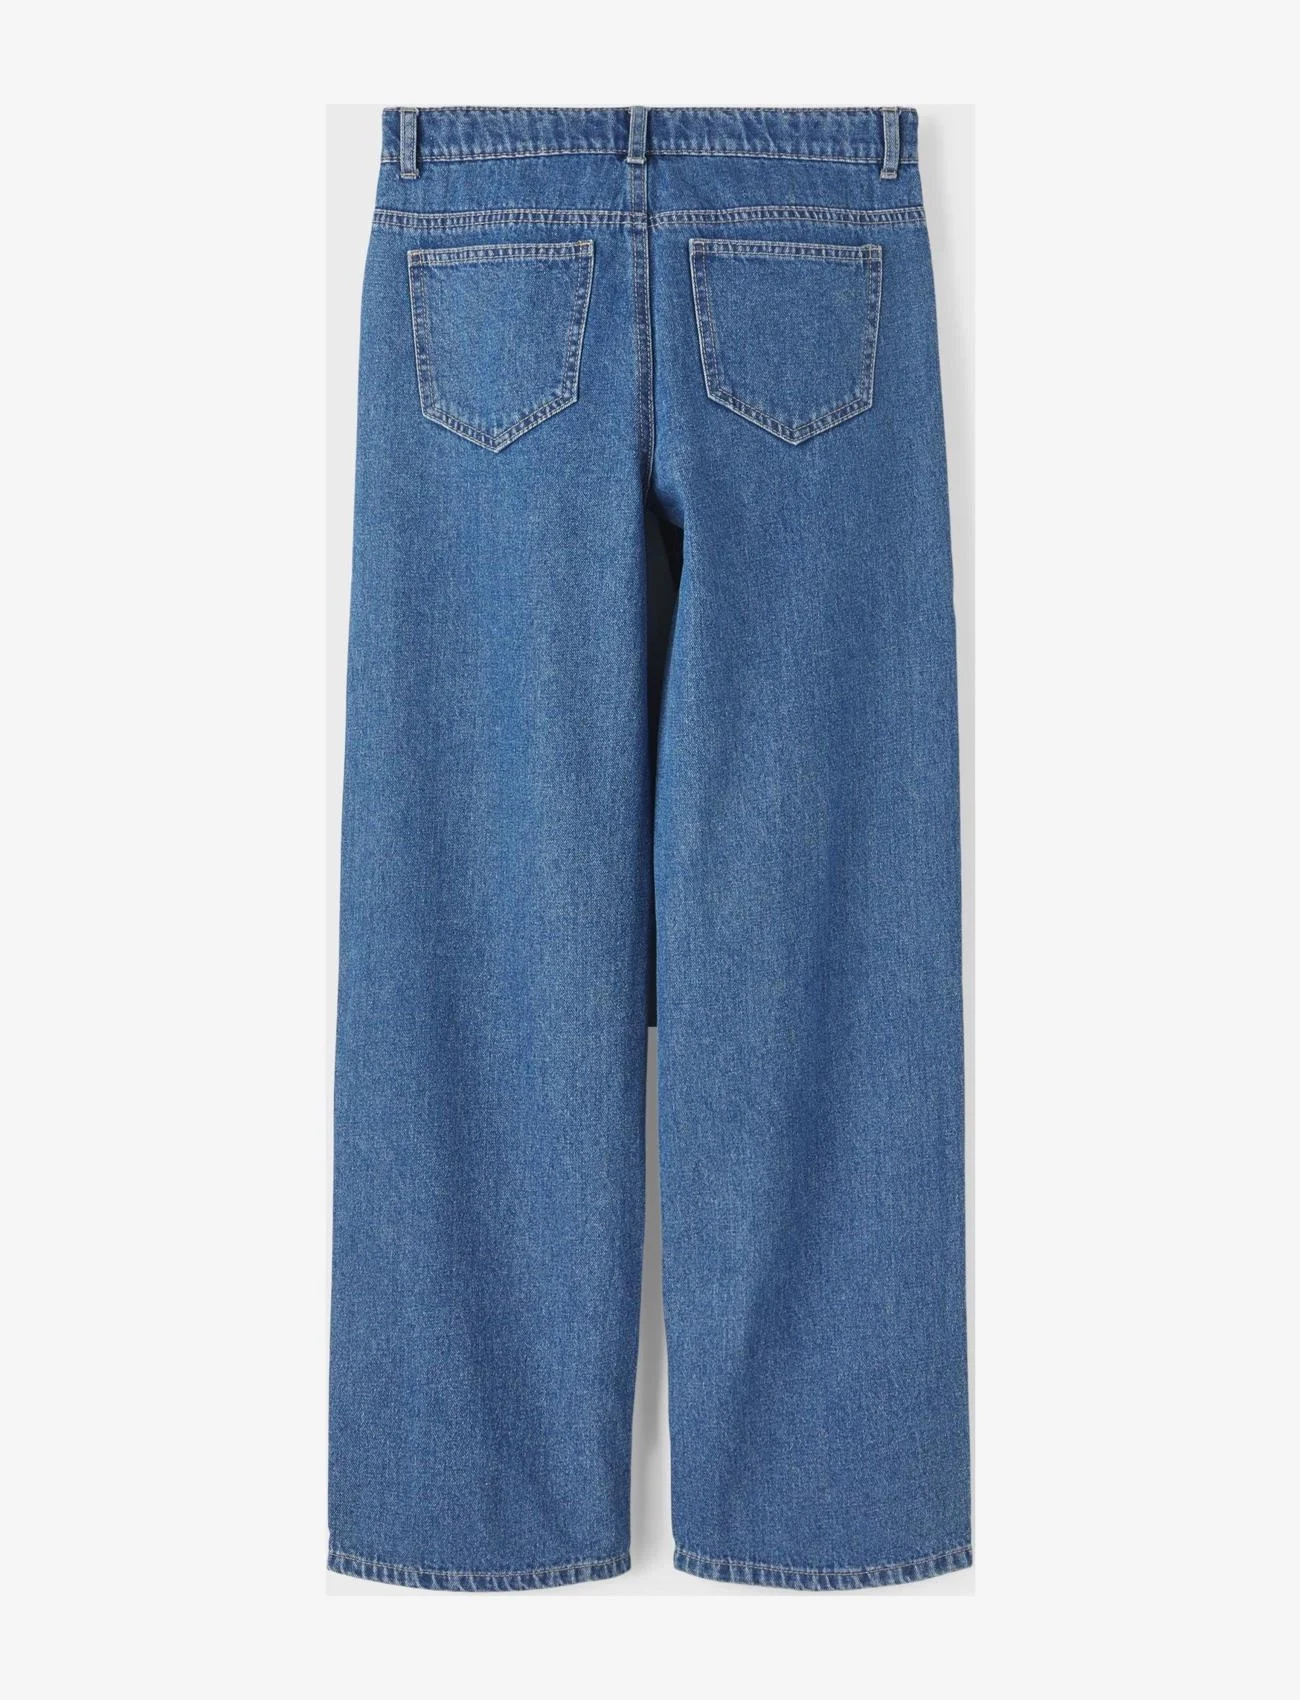 LMTD - NLFTOIZZA DNM LW WIDE PANT NOOS - jeans met wijde pijpen - medium blue denim - 1